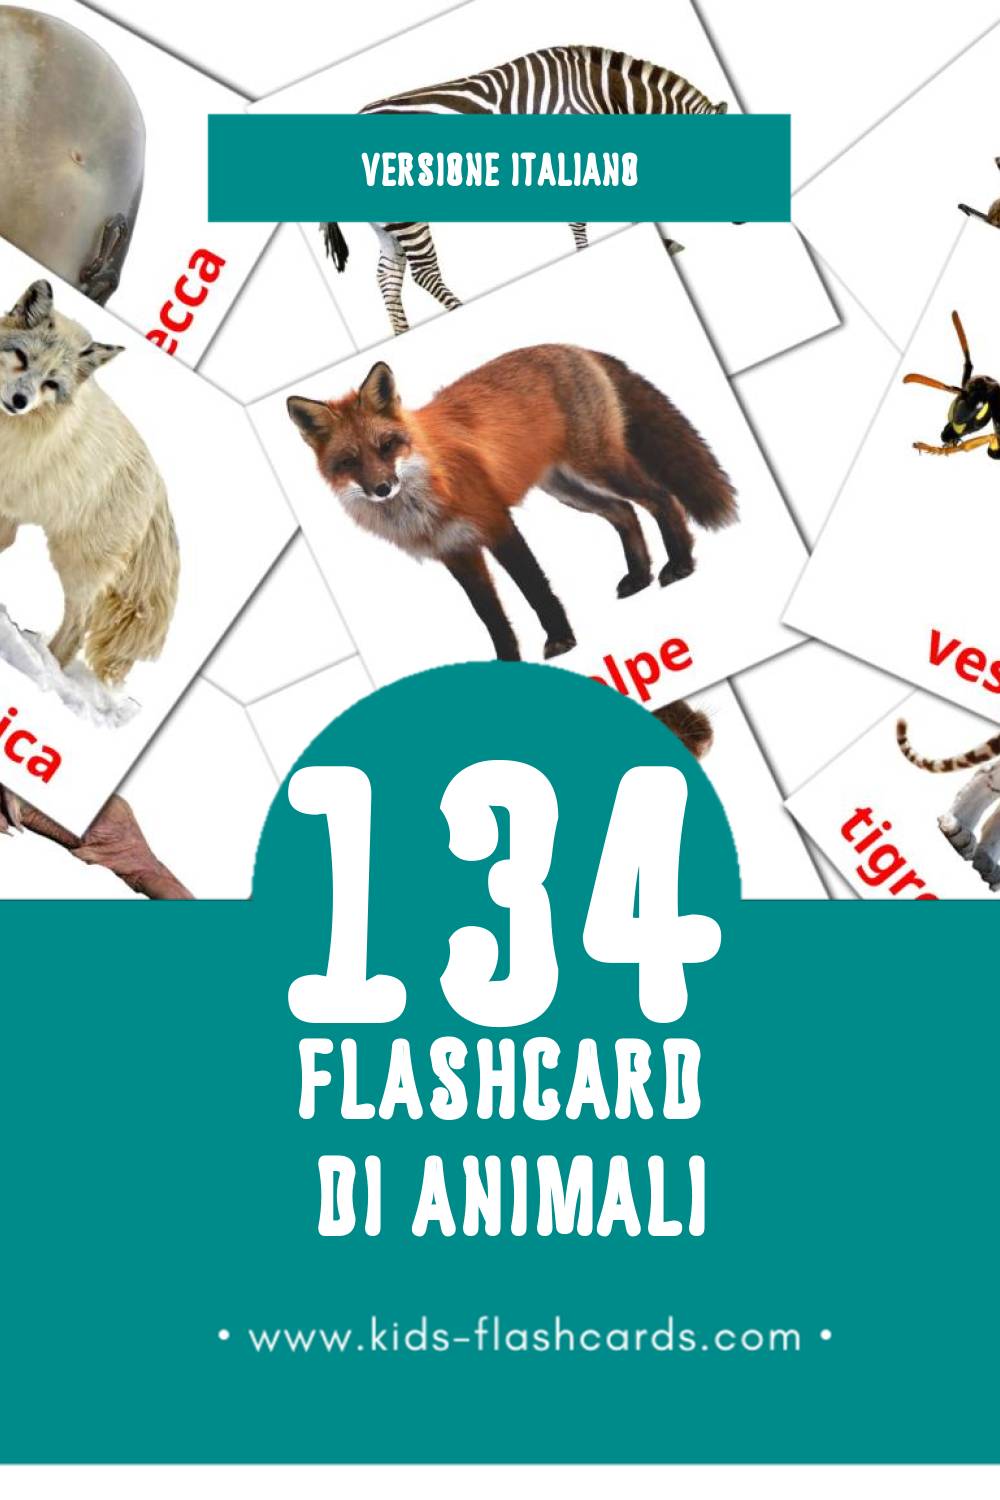 Schede visive sugli Animali per bambini (134 schede in Italiano)